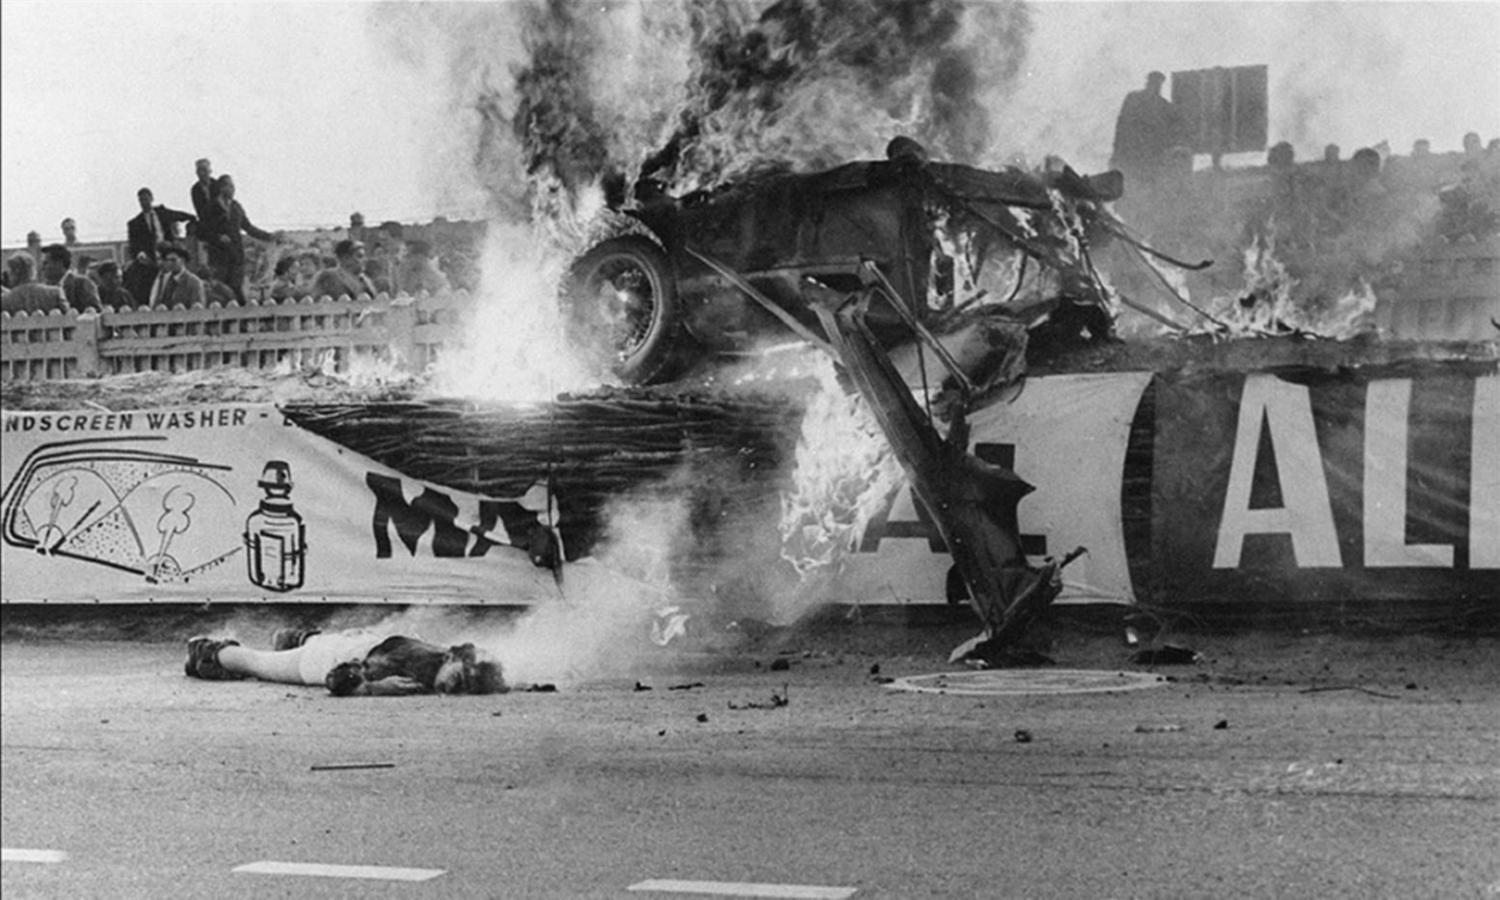 Le Mans : La plus grande tragédie des courses de vitesse de 1955 – Histoires – Forme longue